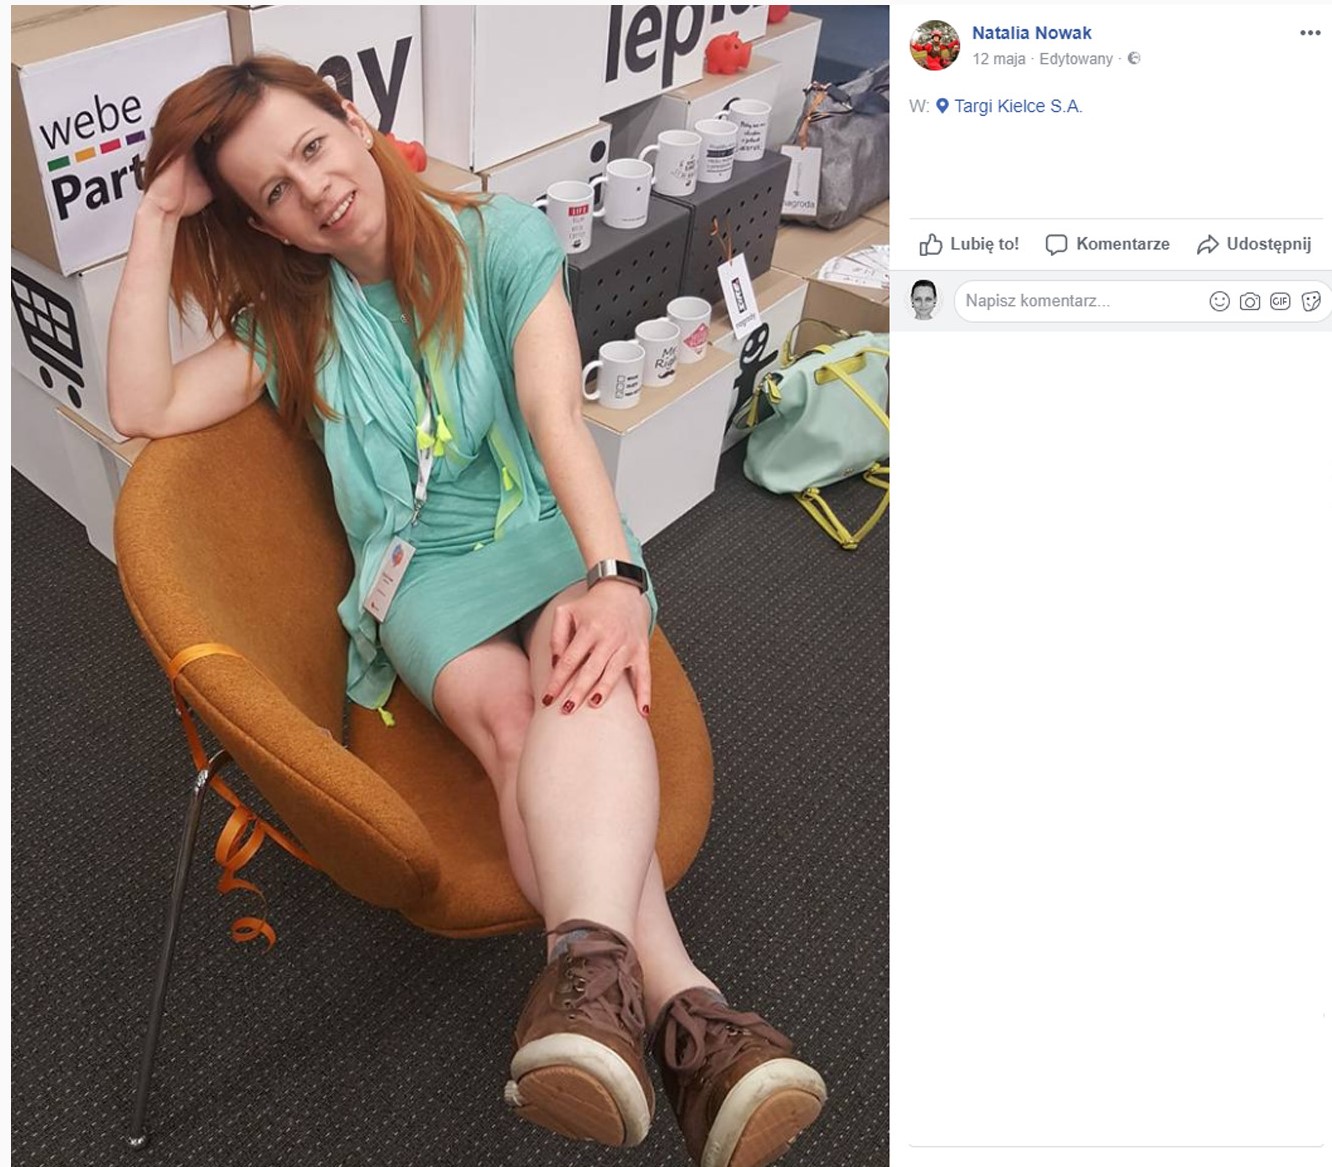 blogerka natalia nowak pozująca z krzesłem ze sklepu meblowiec screenshot z facebooka